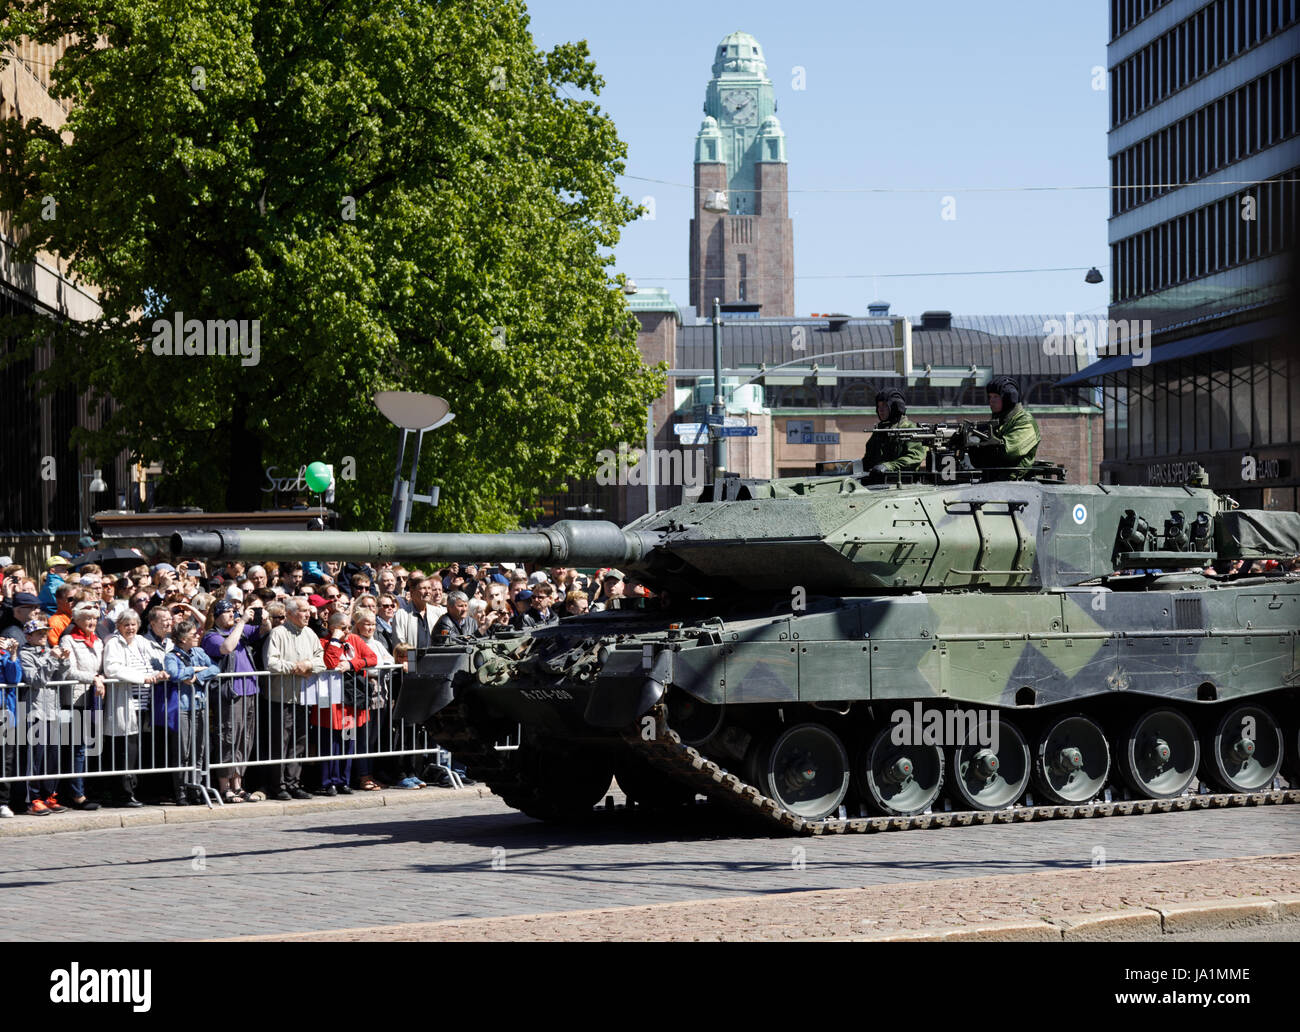 Helsinki, Finnland. 4. Juni 2017. Leopard 2 A6-Kampfpanzer auf der März-von Kredit: Hannu Mononen/Alamy Live News Stockfoto